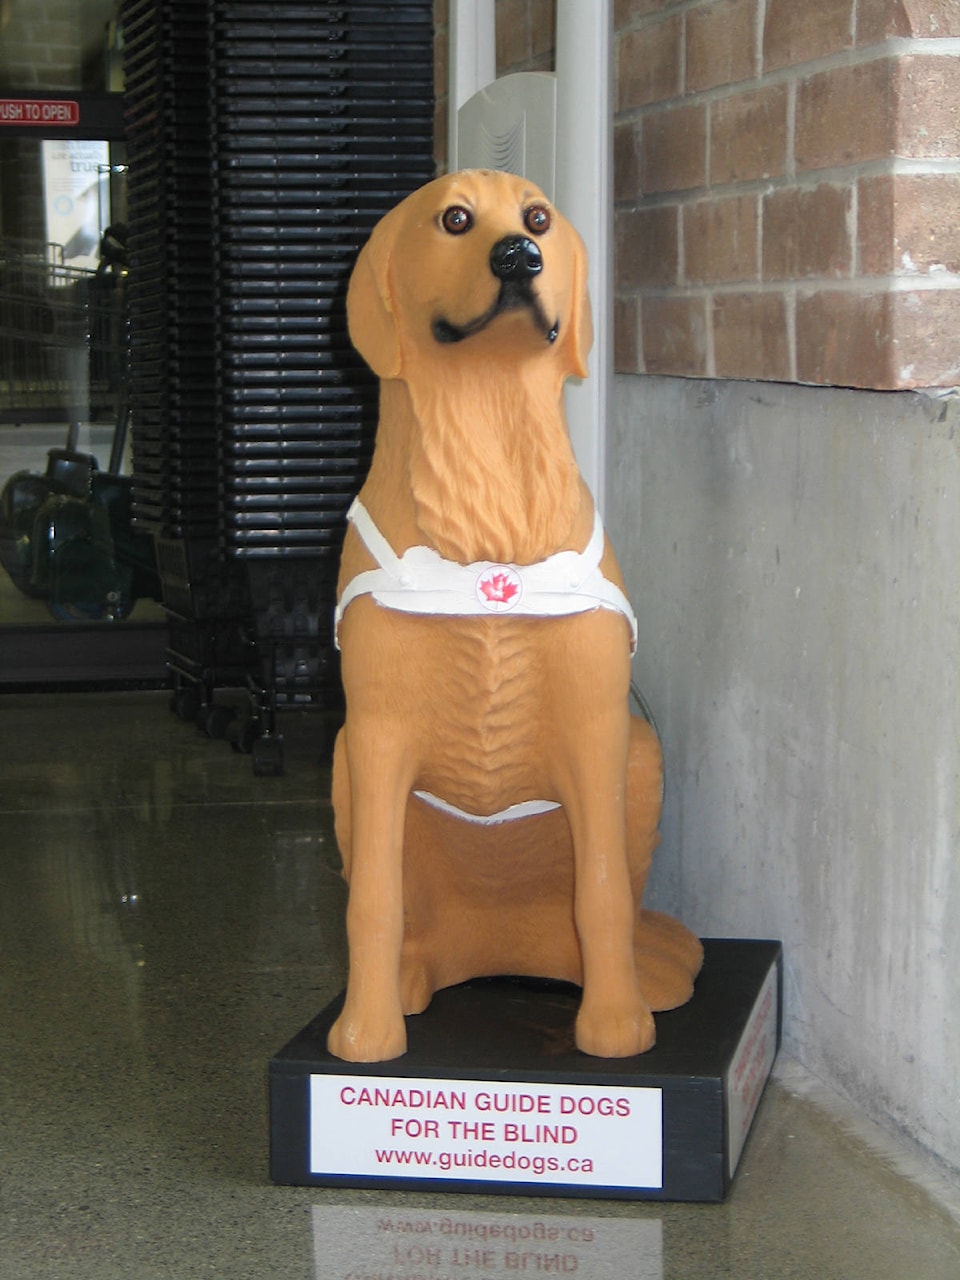 20792977_web1_201314-CCI-donation-dog-for-blind-stolen-big-dog_1